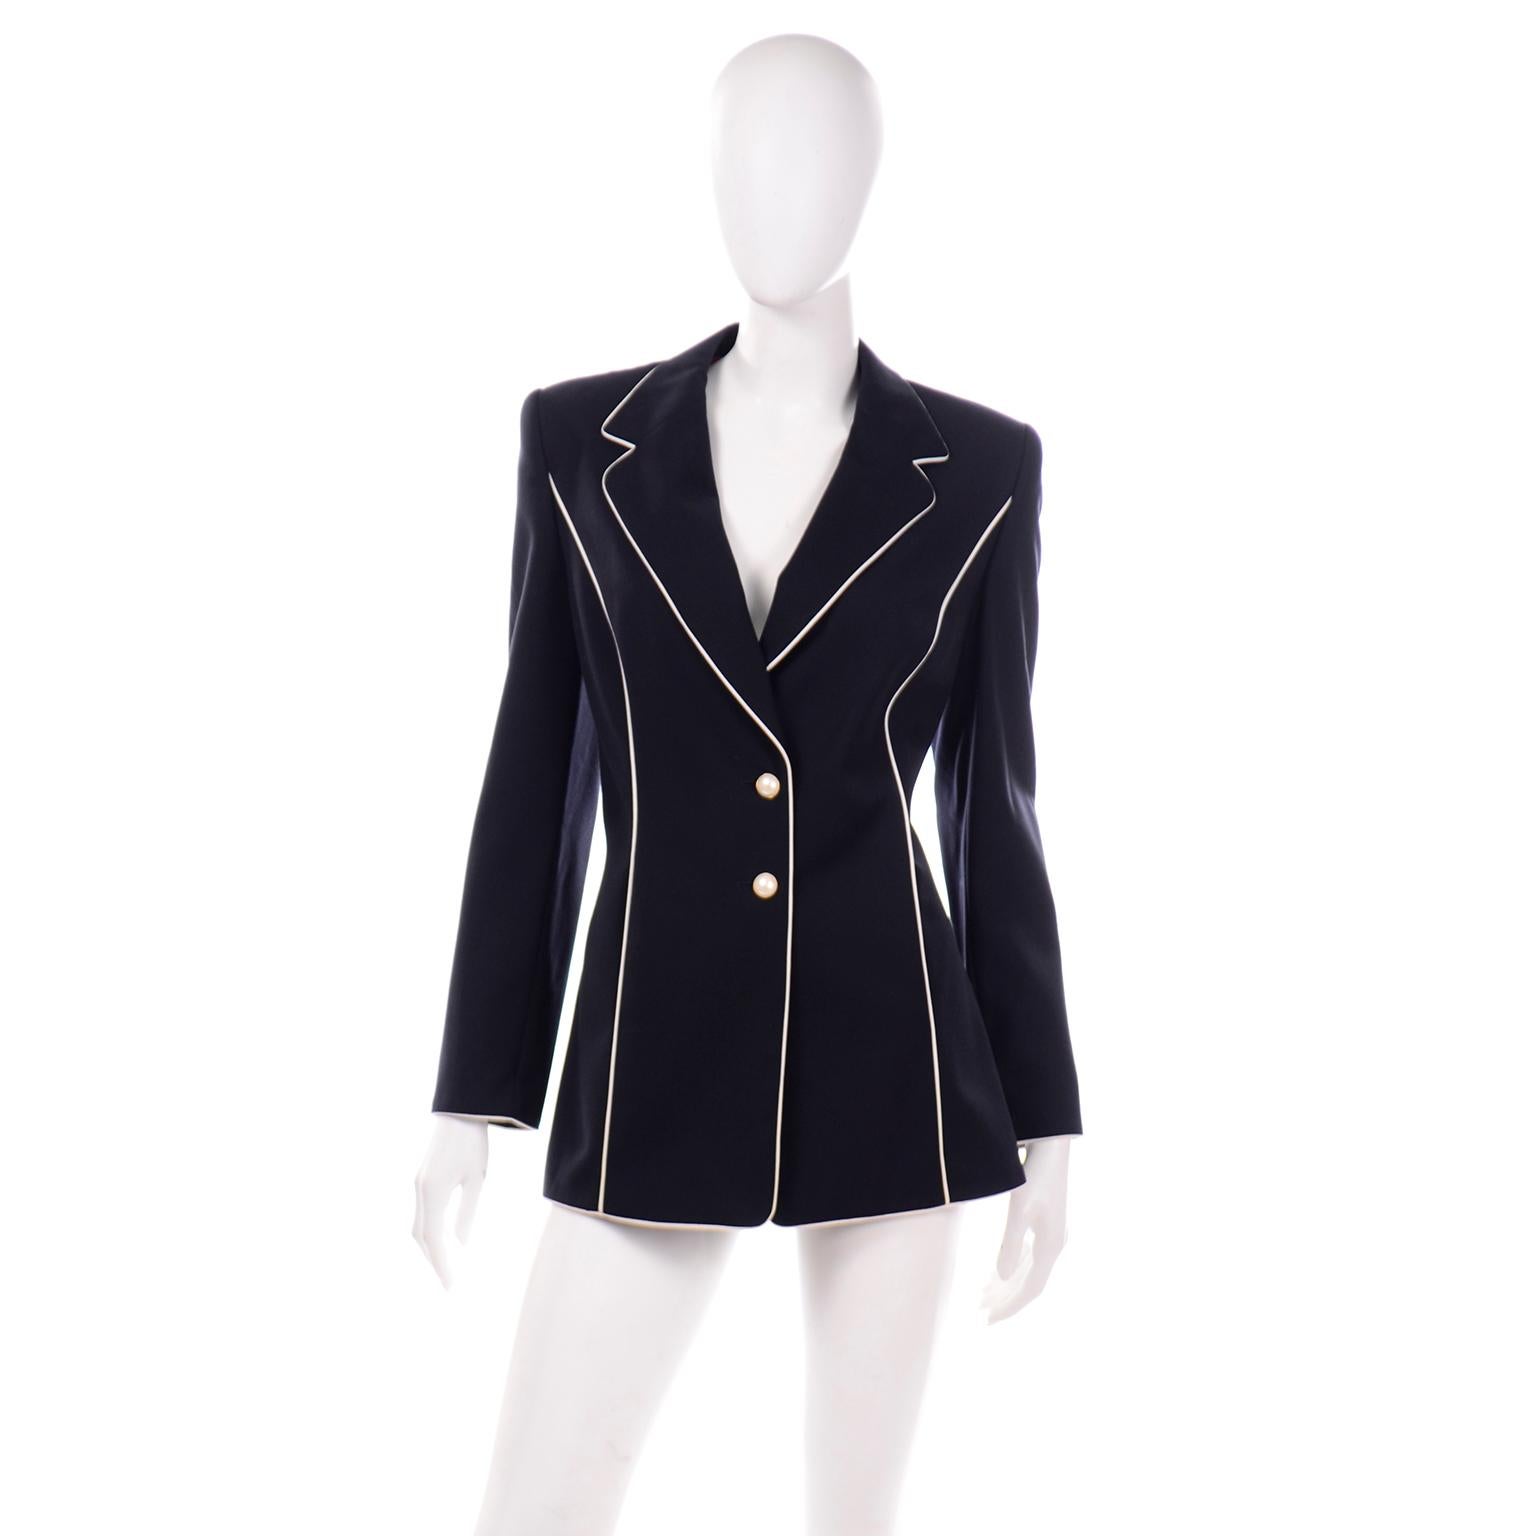 Wir lieben die Vintage-Jacke von Escada, und diese tolle Jacke aus den 1990er Jahren sollte in keiner modernen Garderobe fehlen! Die Jacke im Blazer-Stil hat schöne weiße Paspeln, die einen schönen Kontrast zu dem dunklen, nachtblauen (fast